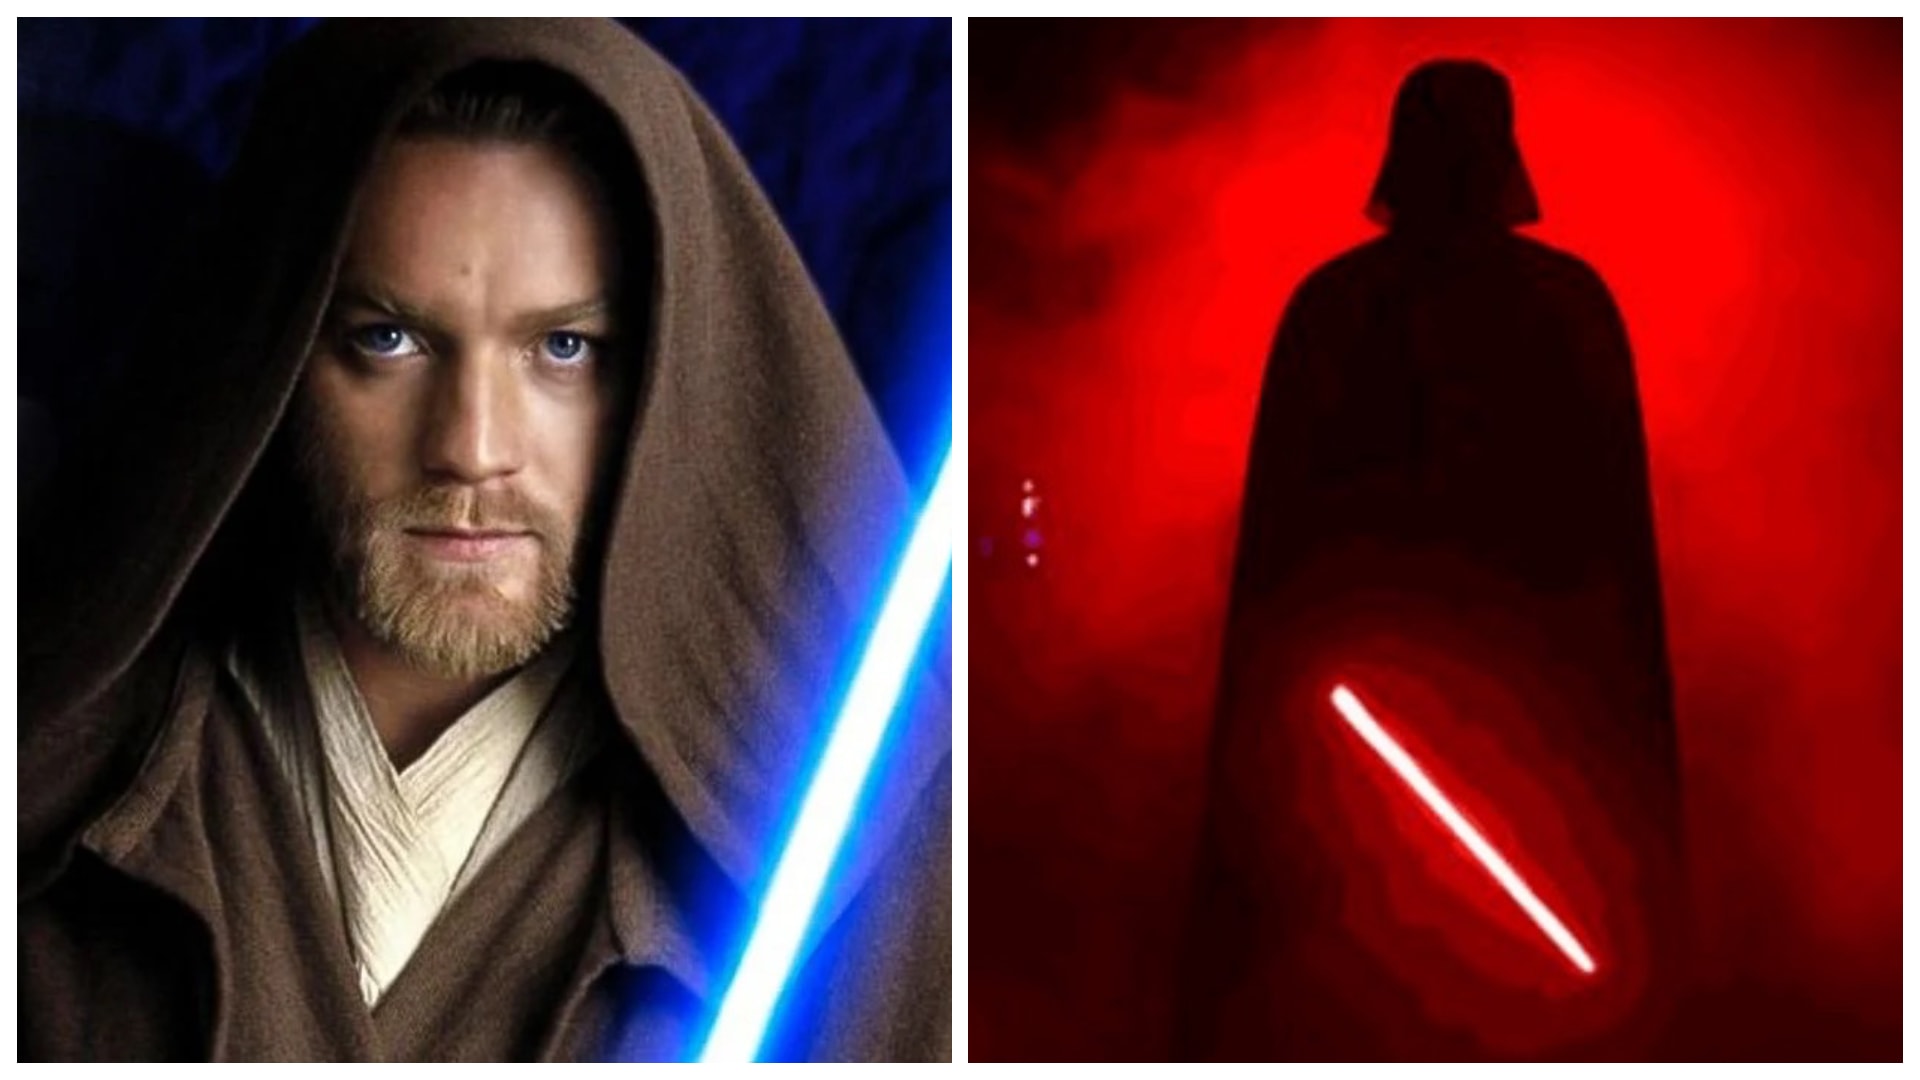 Obi-Wan Kenobi vs. Darth Vader